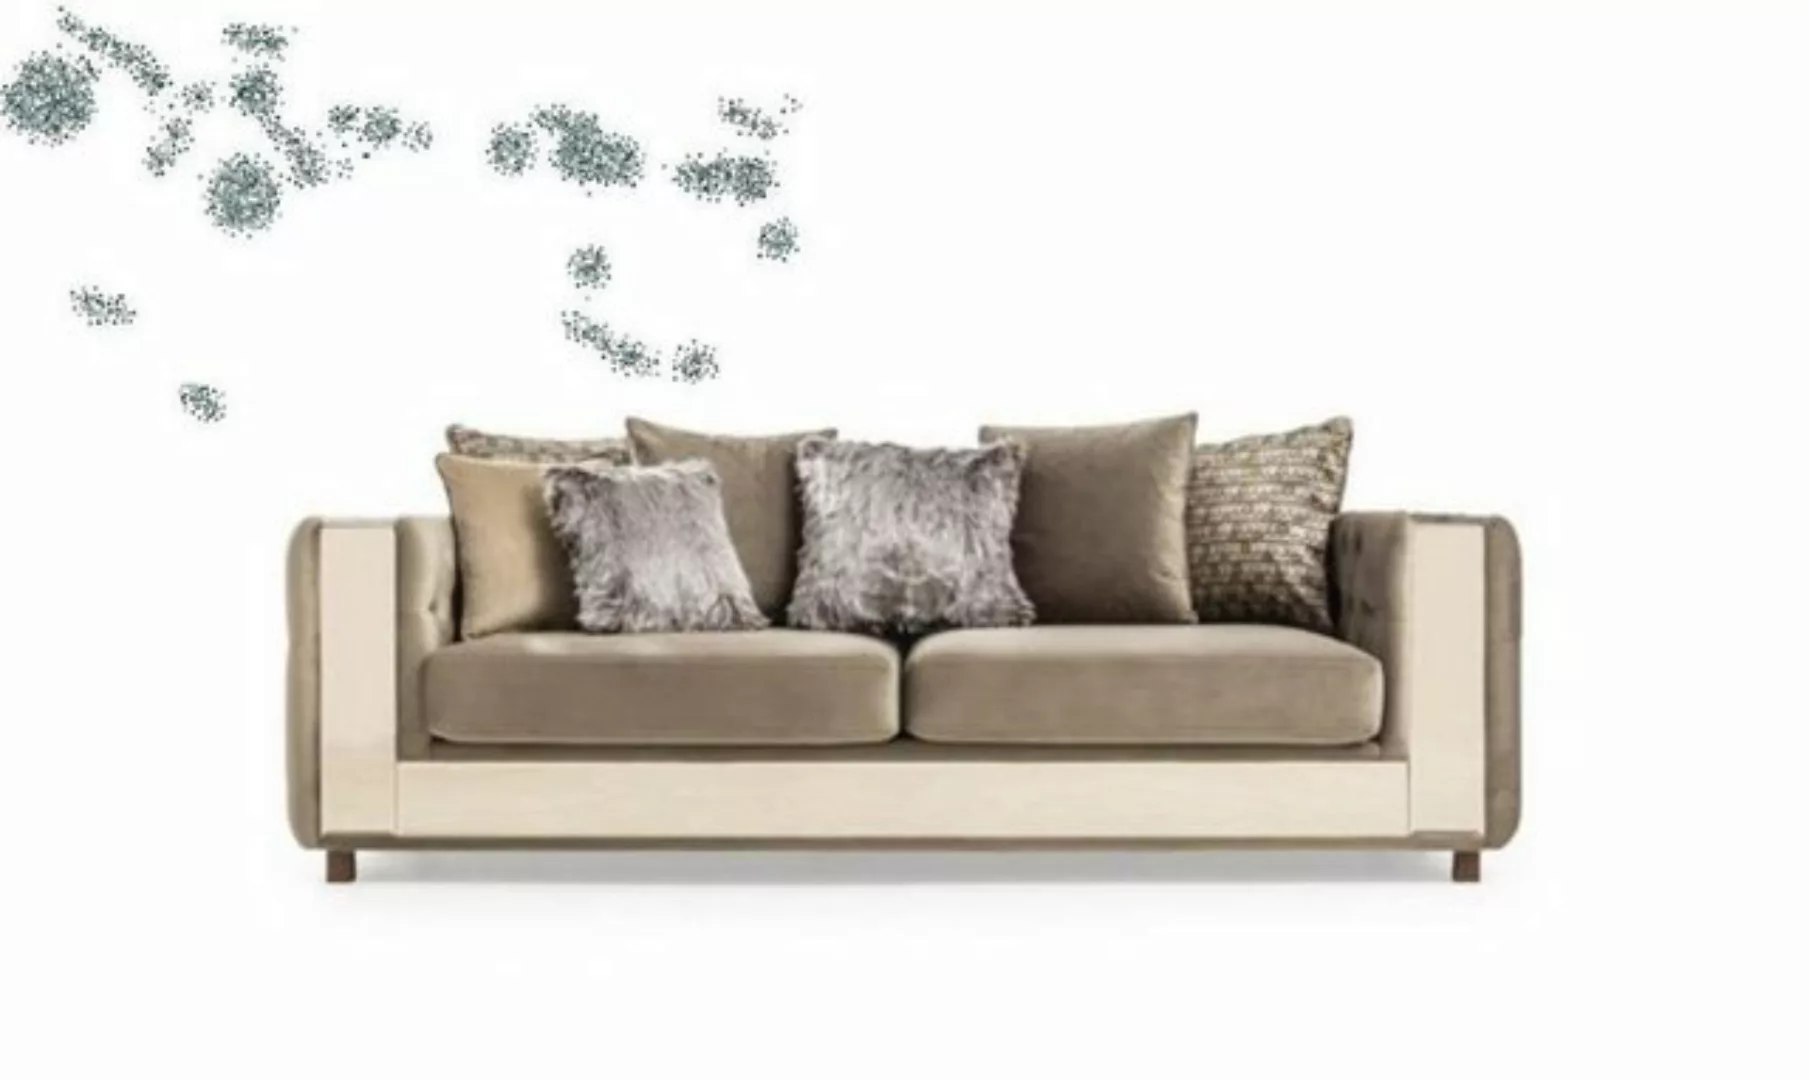 JVmoebel 4-Sitzer Chesterfield Sofa 4 Sitz Wohnzimmer Modern Design Blau So günstig online kaufen